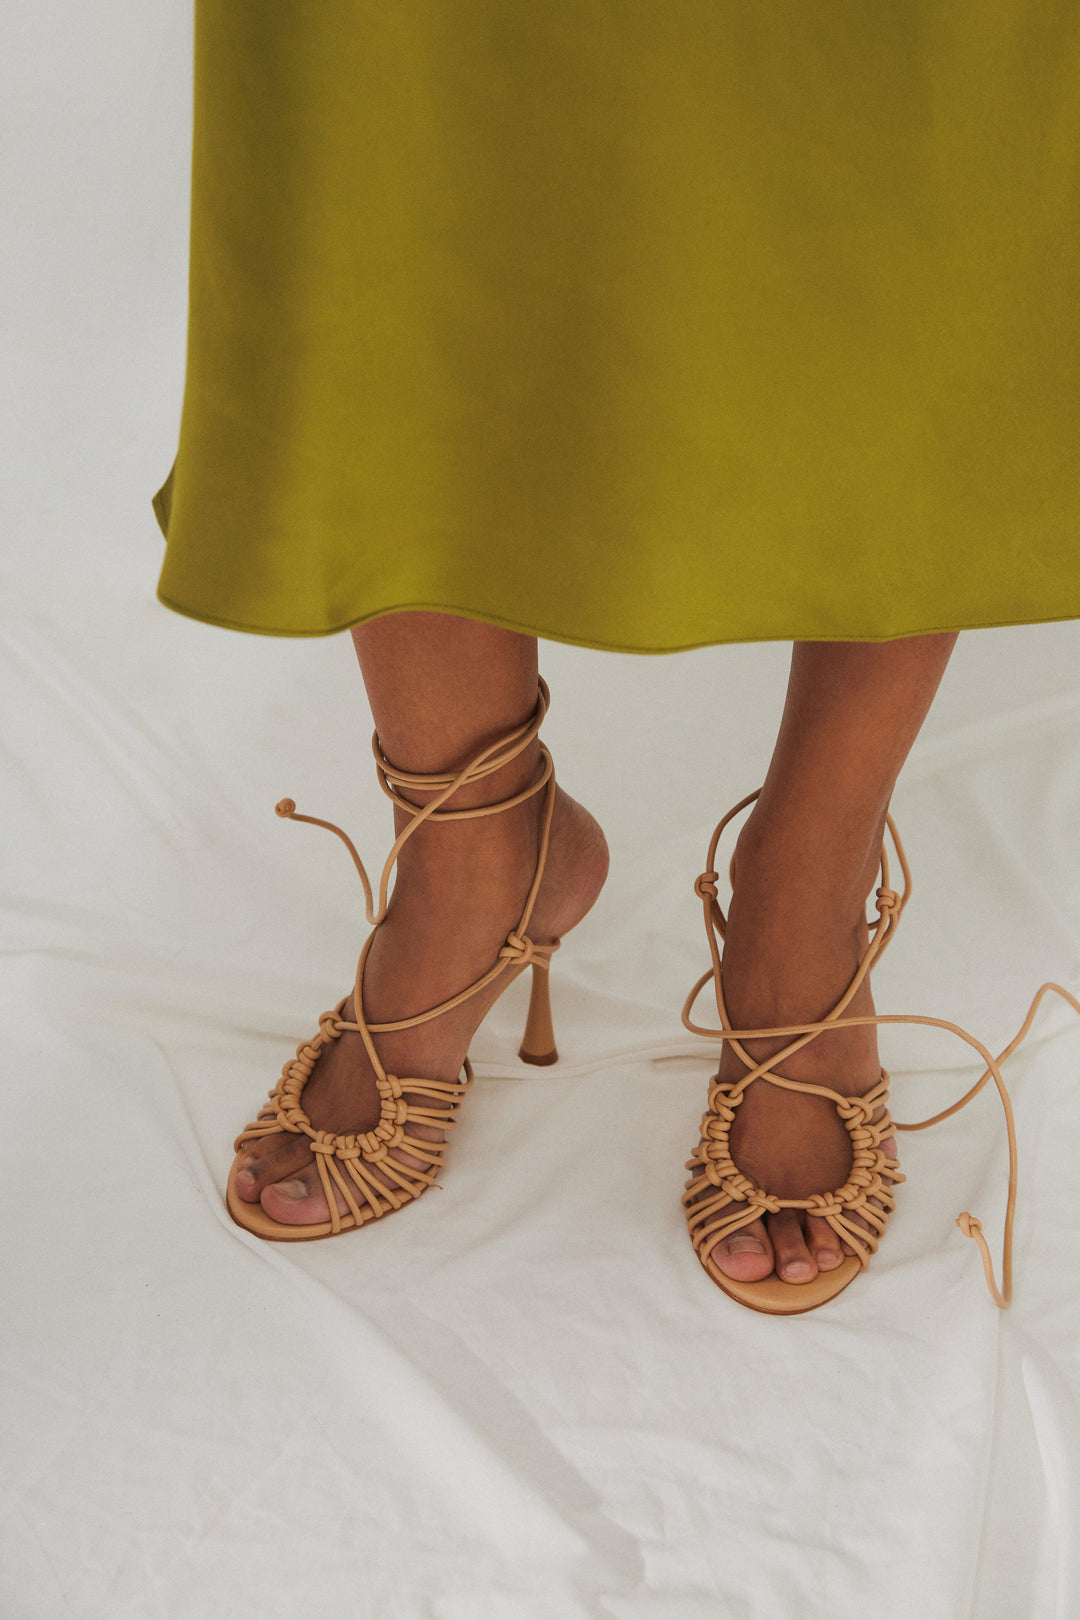 Sandały damskie w kolorze beżowym ze skóry naturalnej marki Estro - prezentacja na modelce.